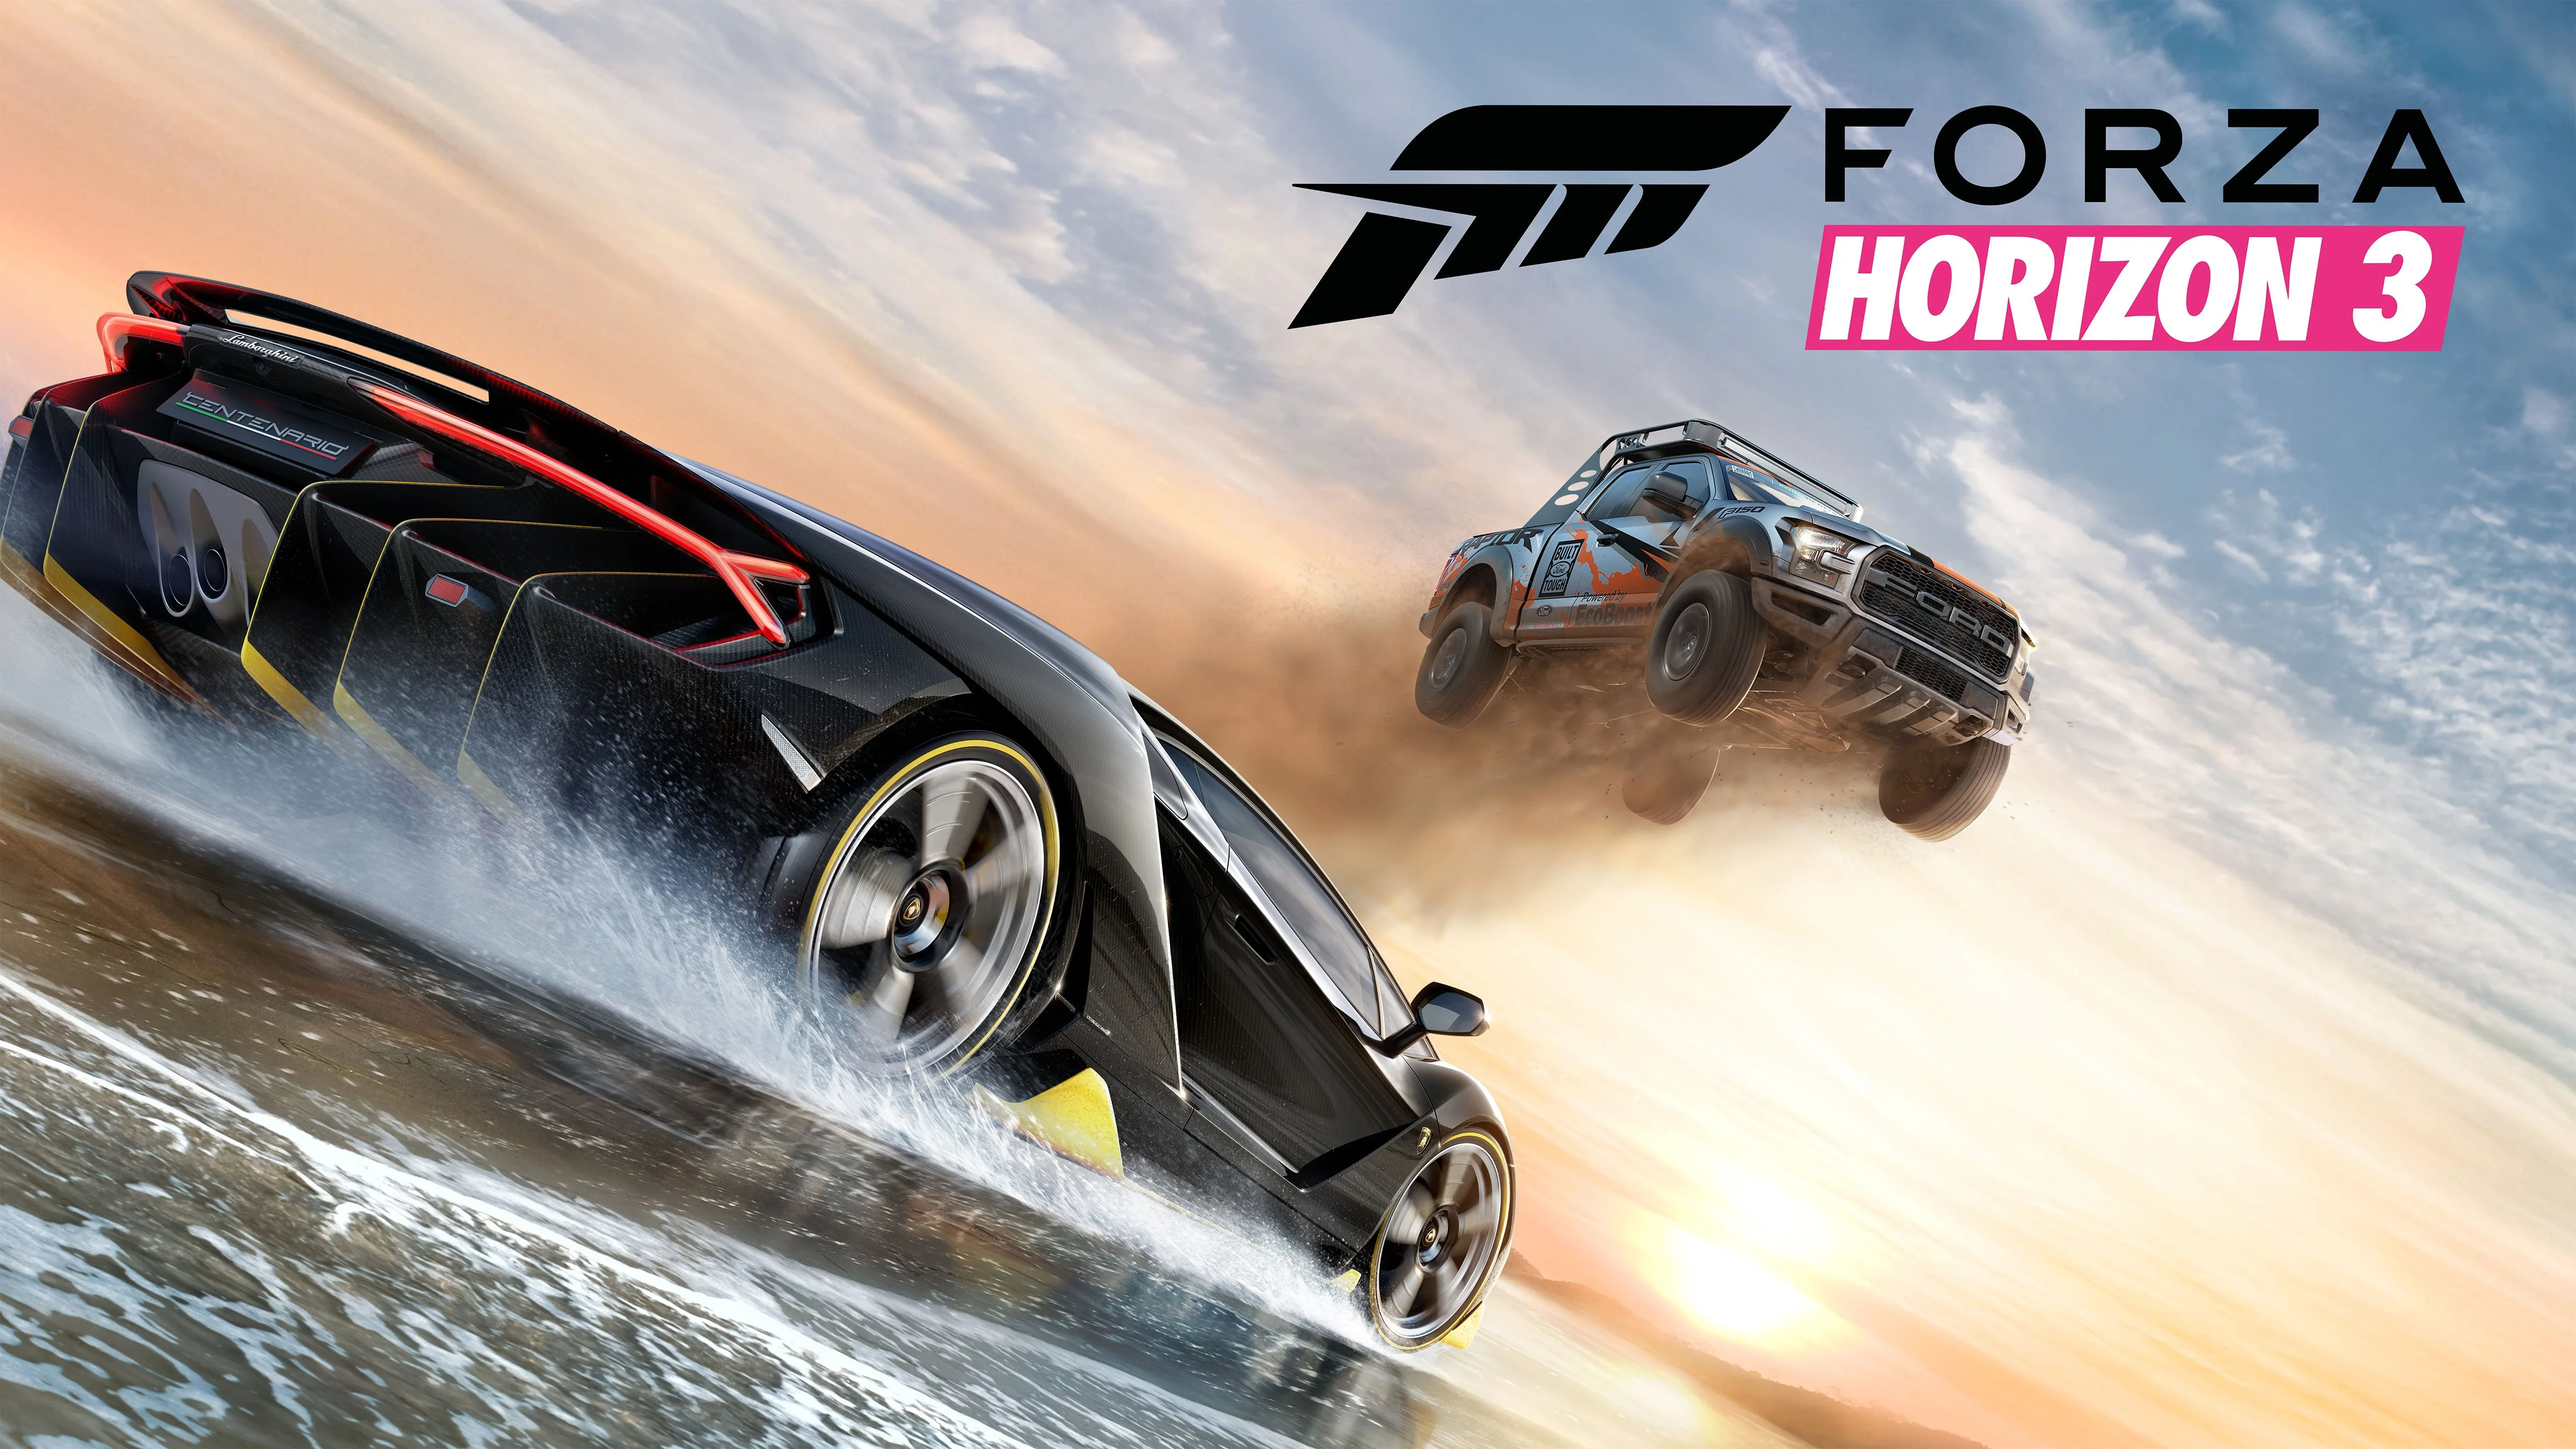 Из года в год игры серии Forza Horizon становятся лучшими в своем жанре. И если в этом году вы ждали сюрприза, то скажу сразу — его не случилось. Forza Horizon 3 хороша и с легкостью обходит всех ближайших конкурентов. Все привычно. Похорошела игра практически во всех аспектах, но главное — она наконец-то достойно задействовала открытый мир.